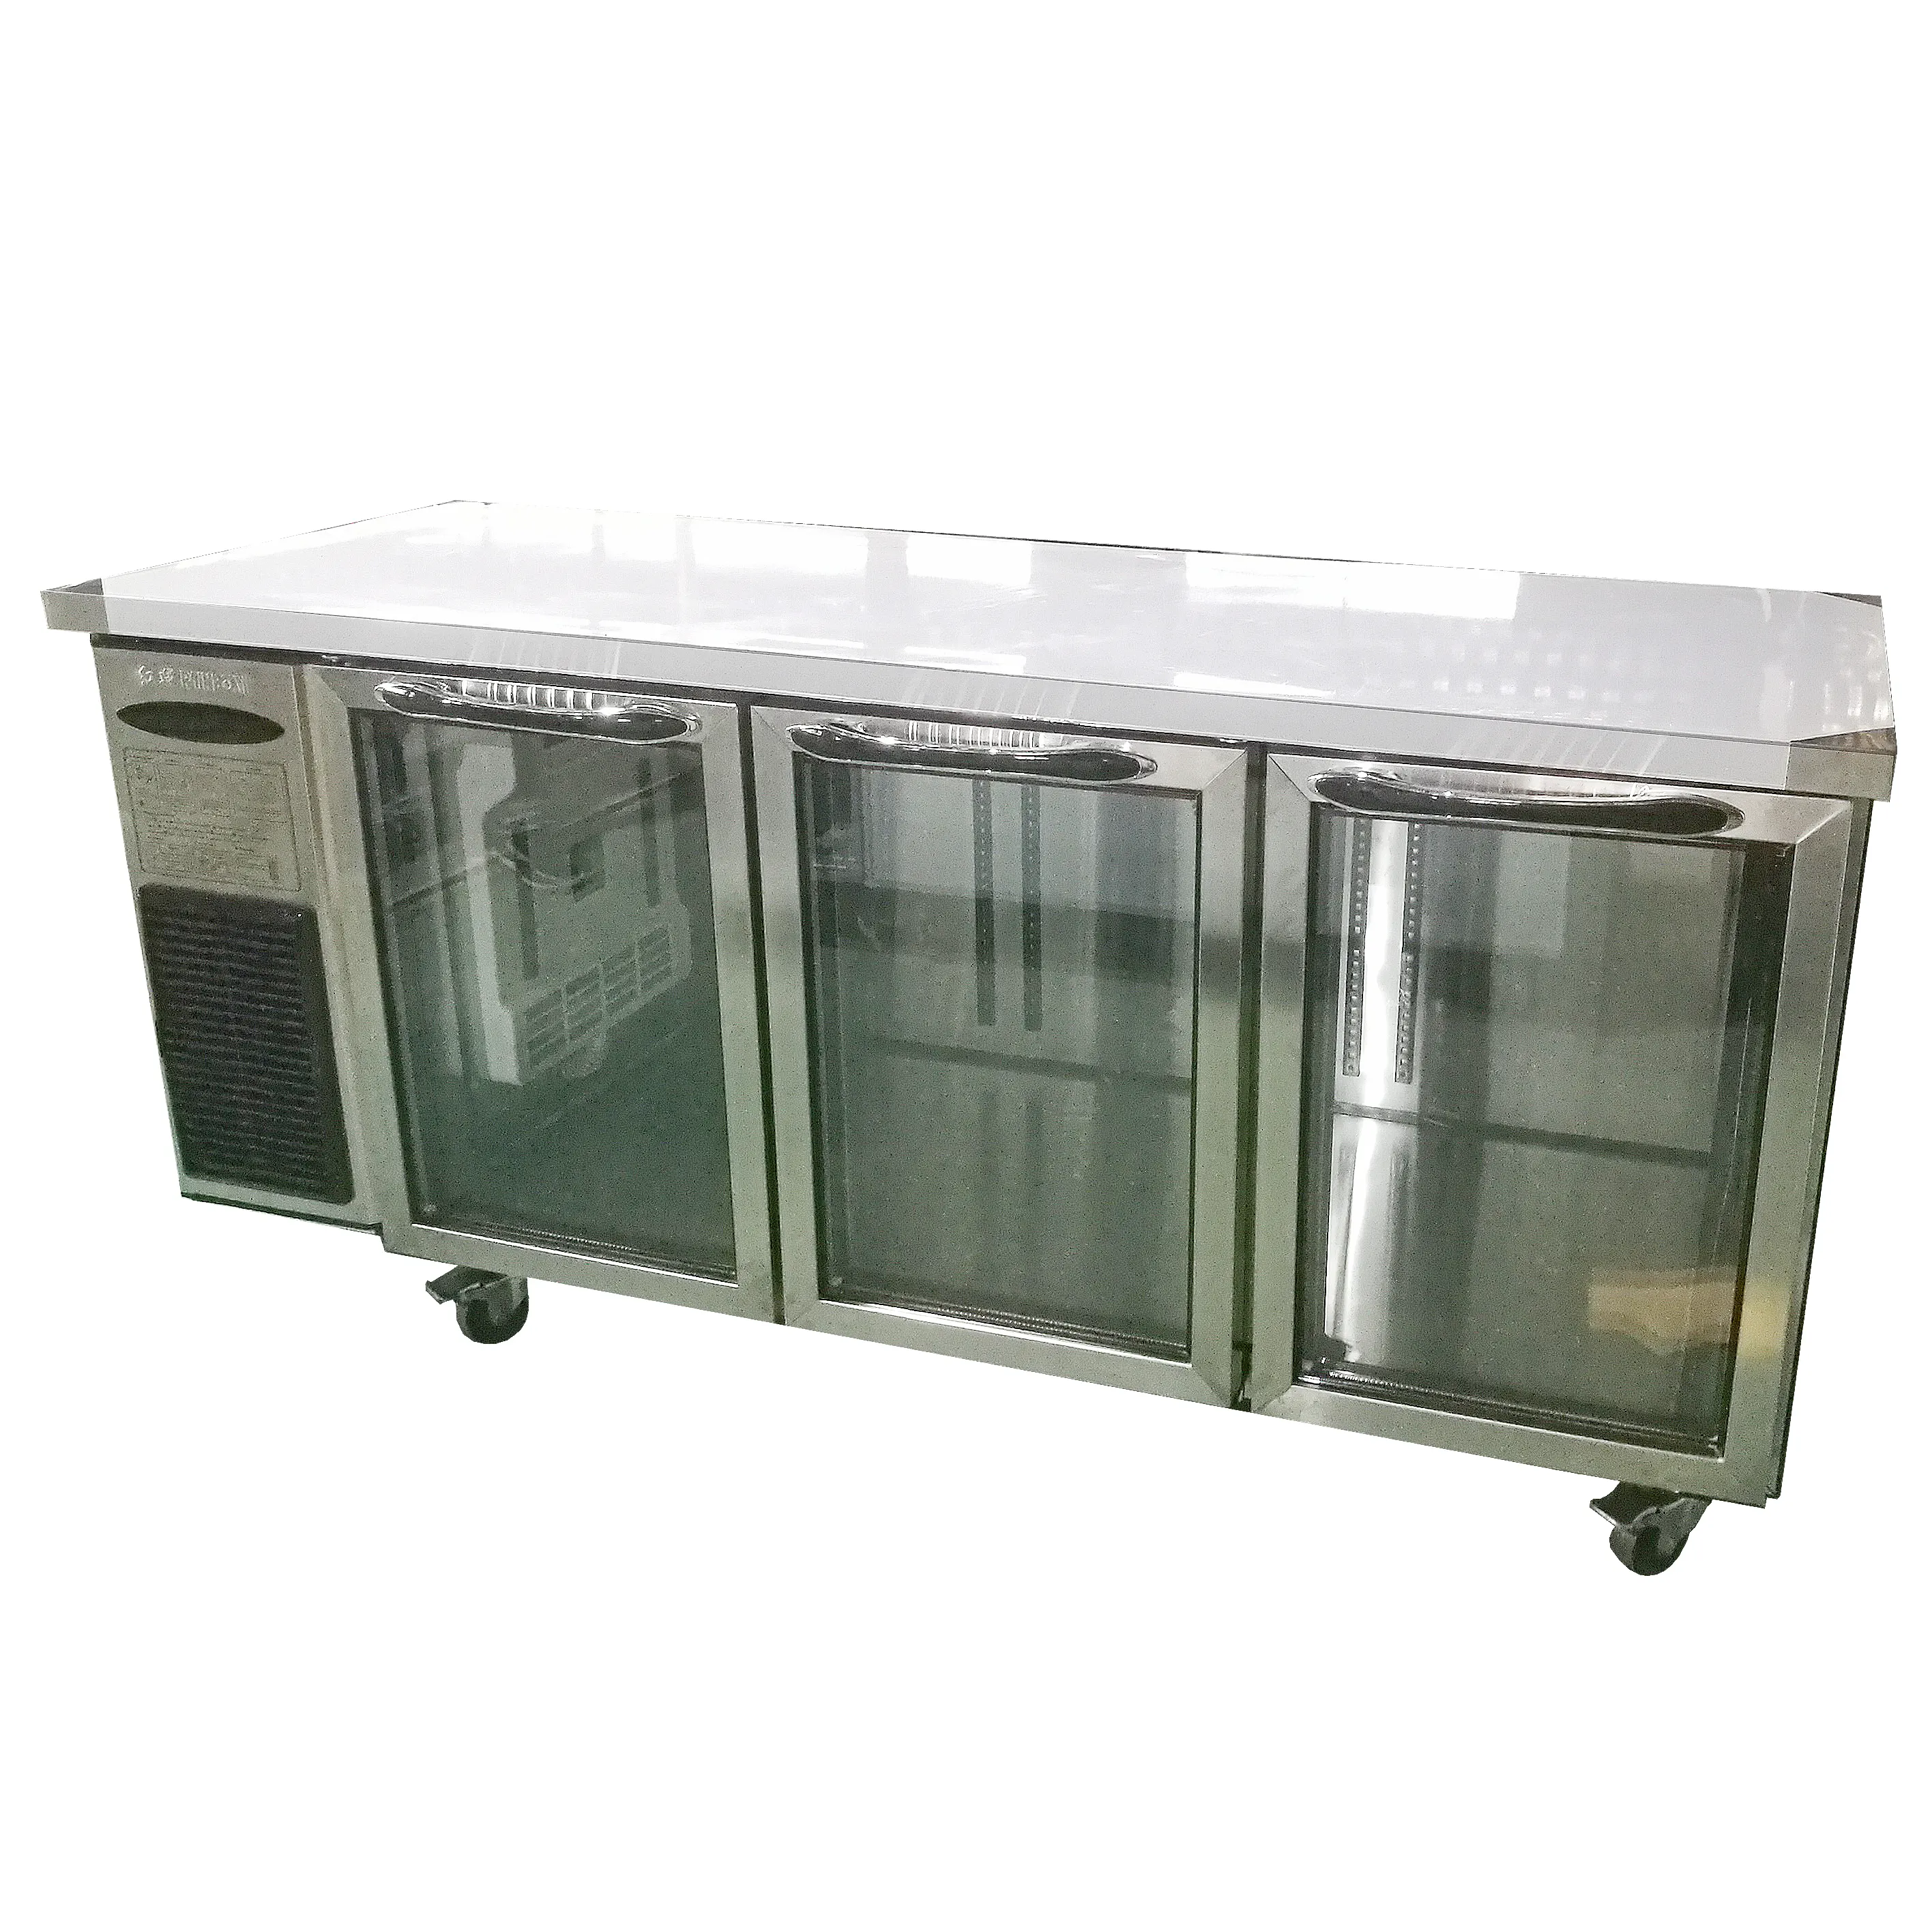 Redbowl-puerta de vidrio calefactable para cafetería, refrigerador debajo del mostrador, 460L, 1800mm